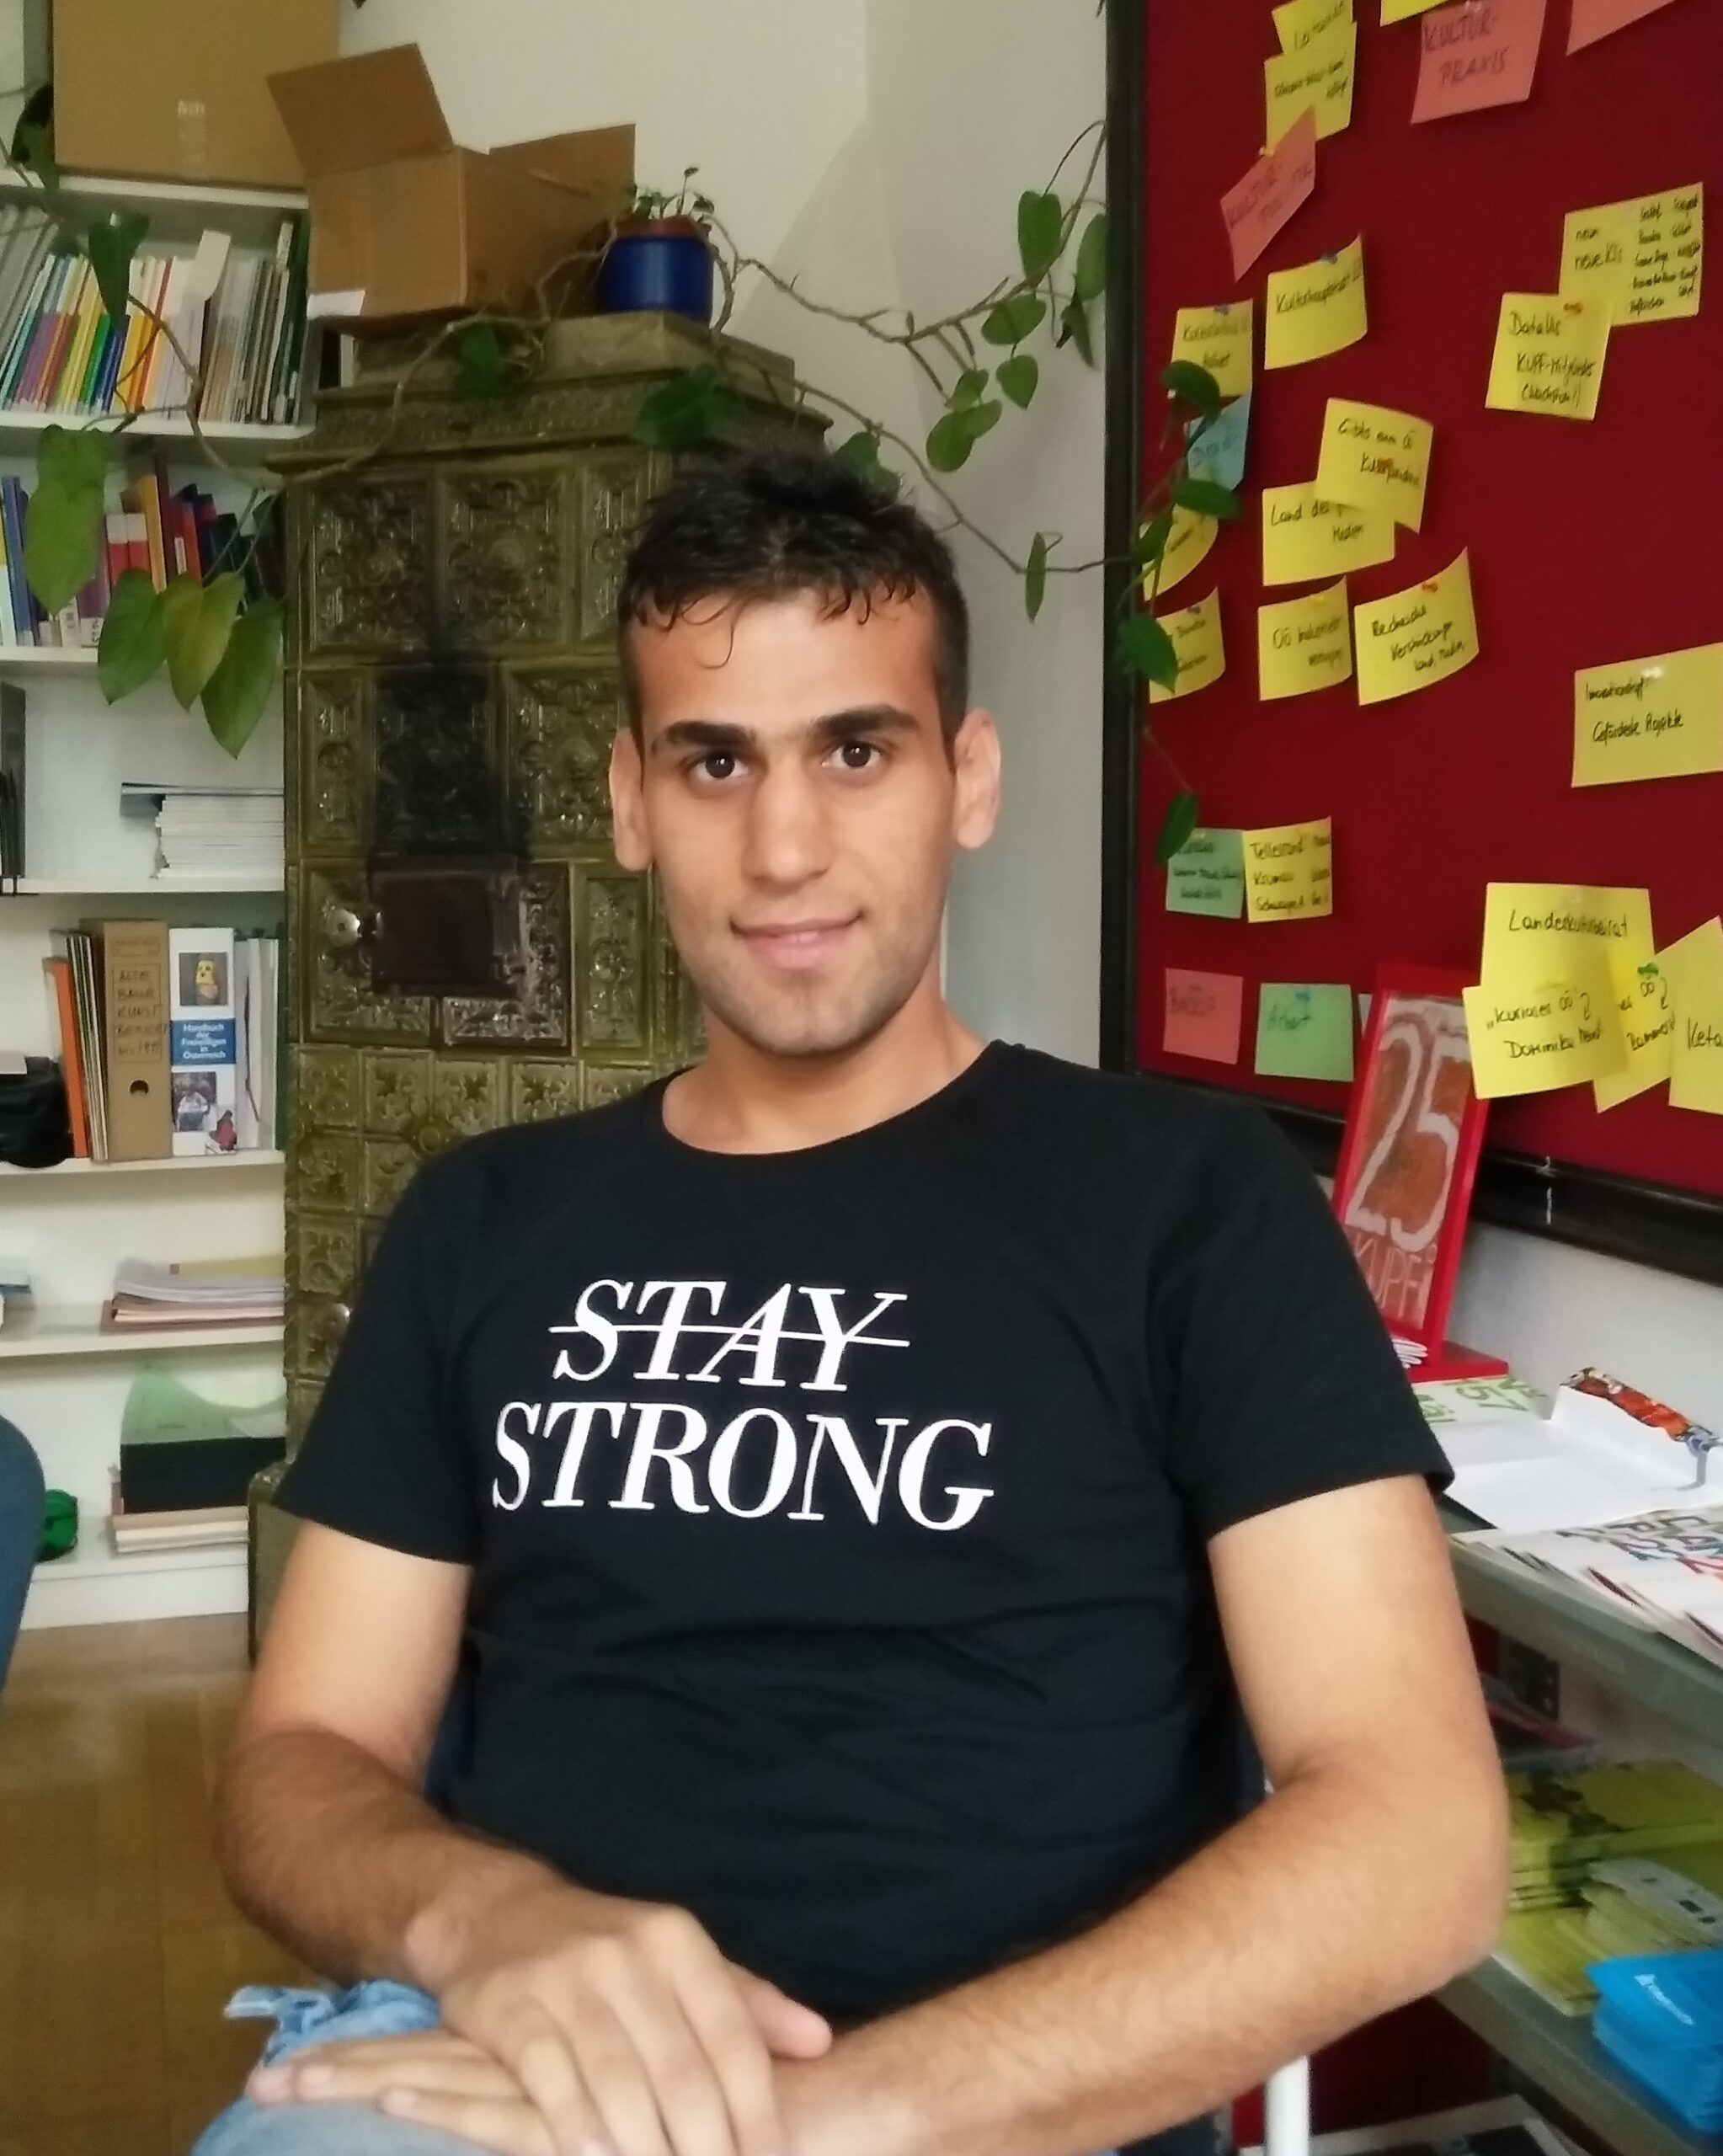 Ahmed Alqaysi zu Gast im KUPFbüro. Auf seinem T-Shirt steht "STAY STRONG", das "STAY" ist durchgestrichen.